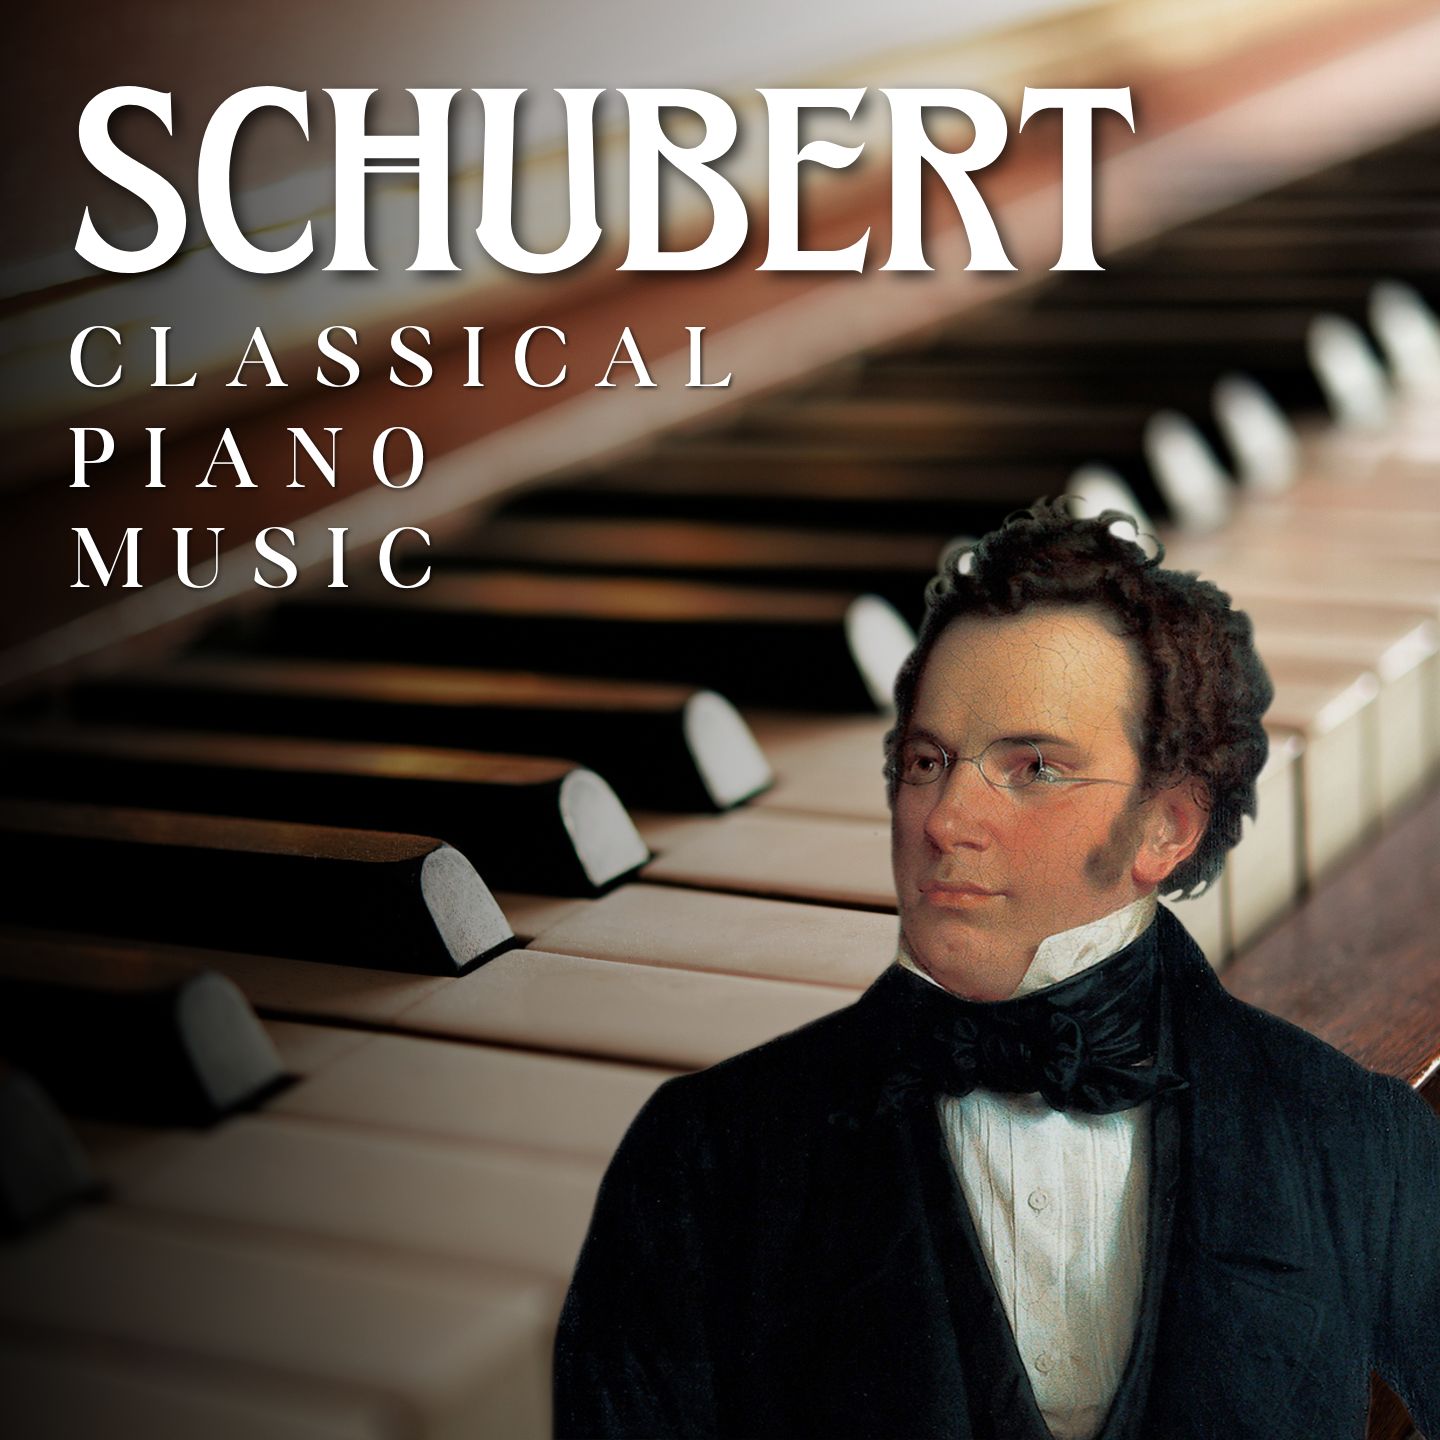 Schubert: Classical Piano Music